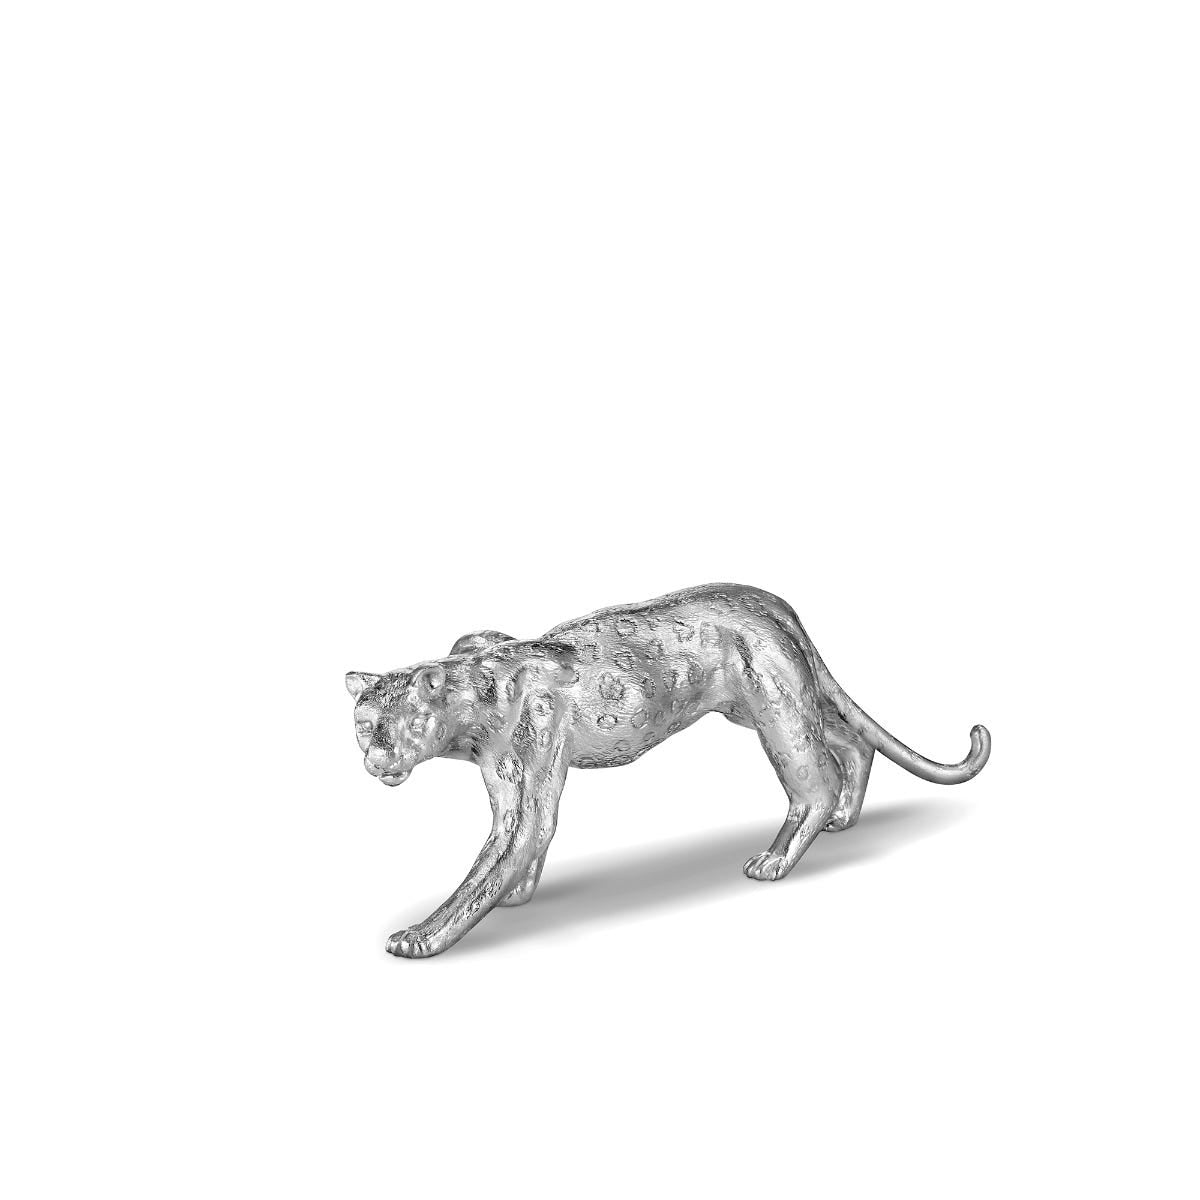 Leopard Figurine in Sterling Silver